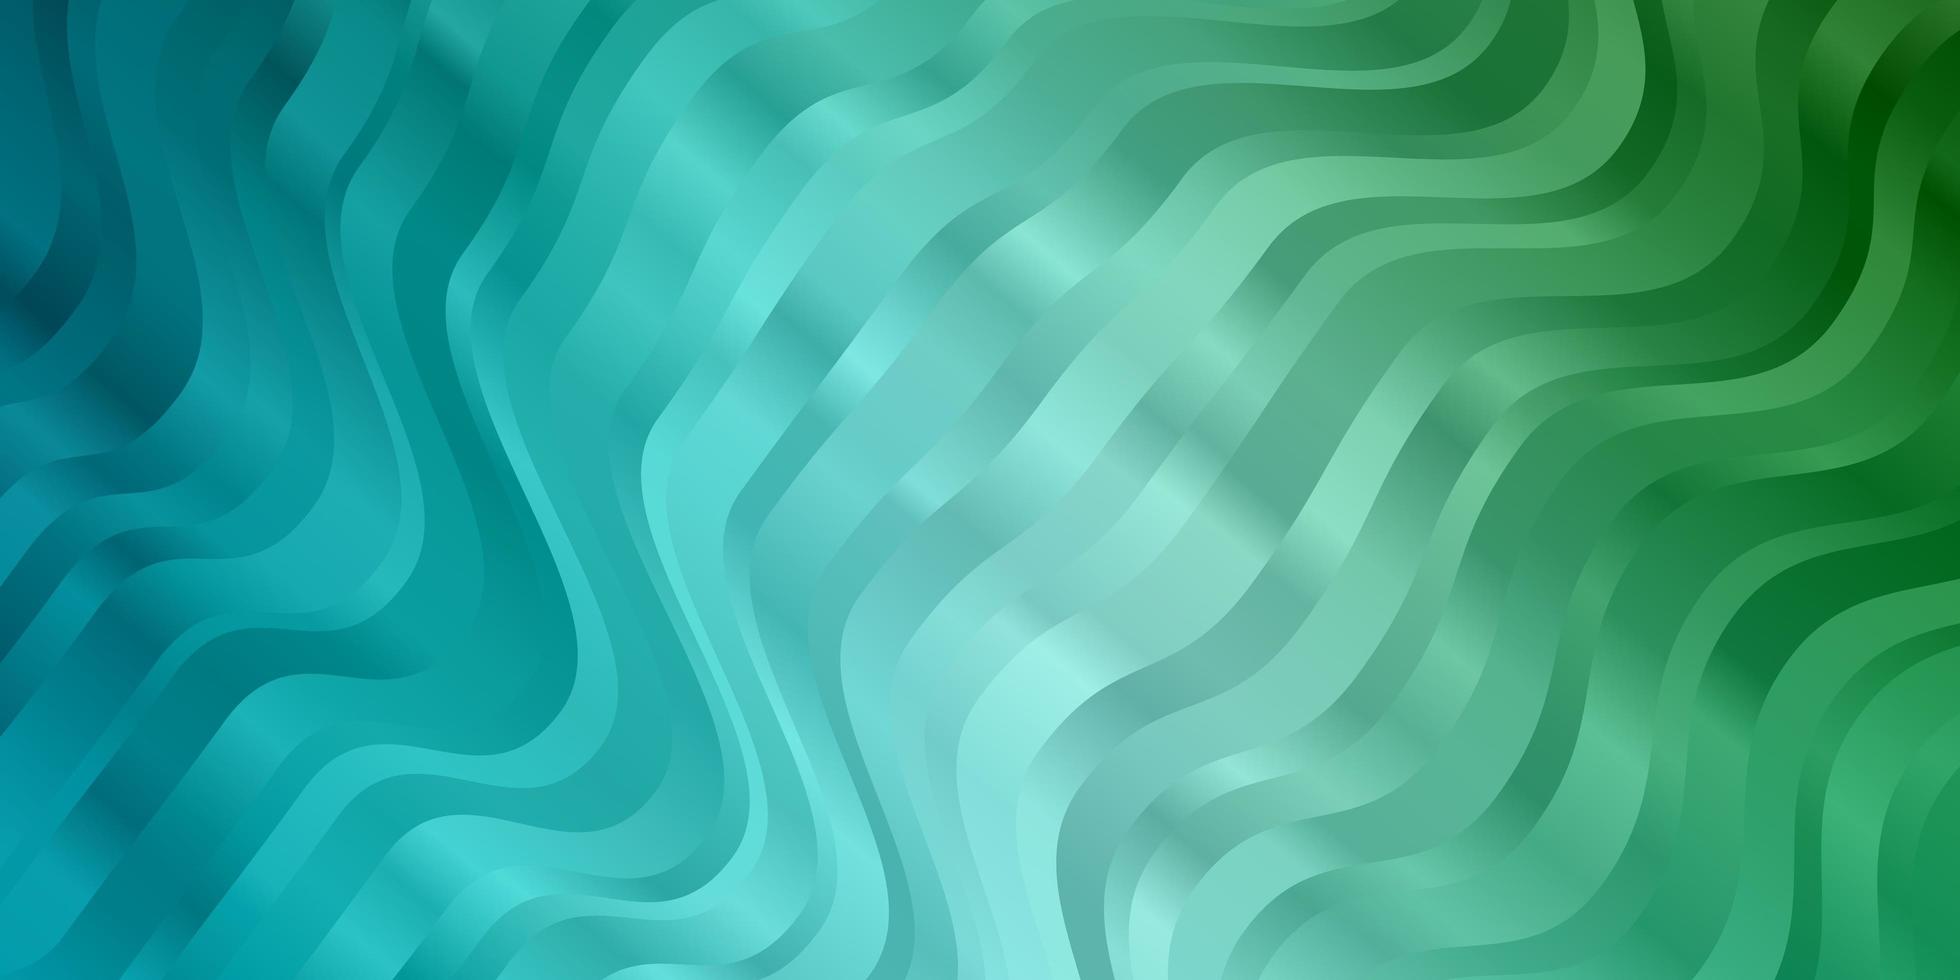 hellblau-grüne Vektorvorlage mit geschwungenen Linien brandneue farbenfrohe Illustration mit gebogenen Linienmuster für Website-Landingpages vektor